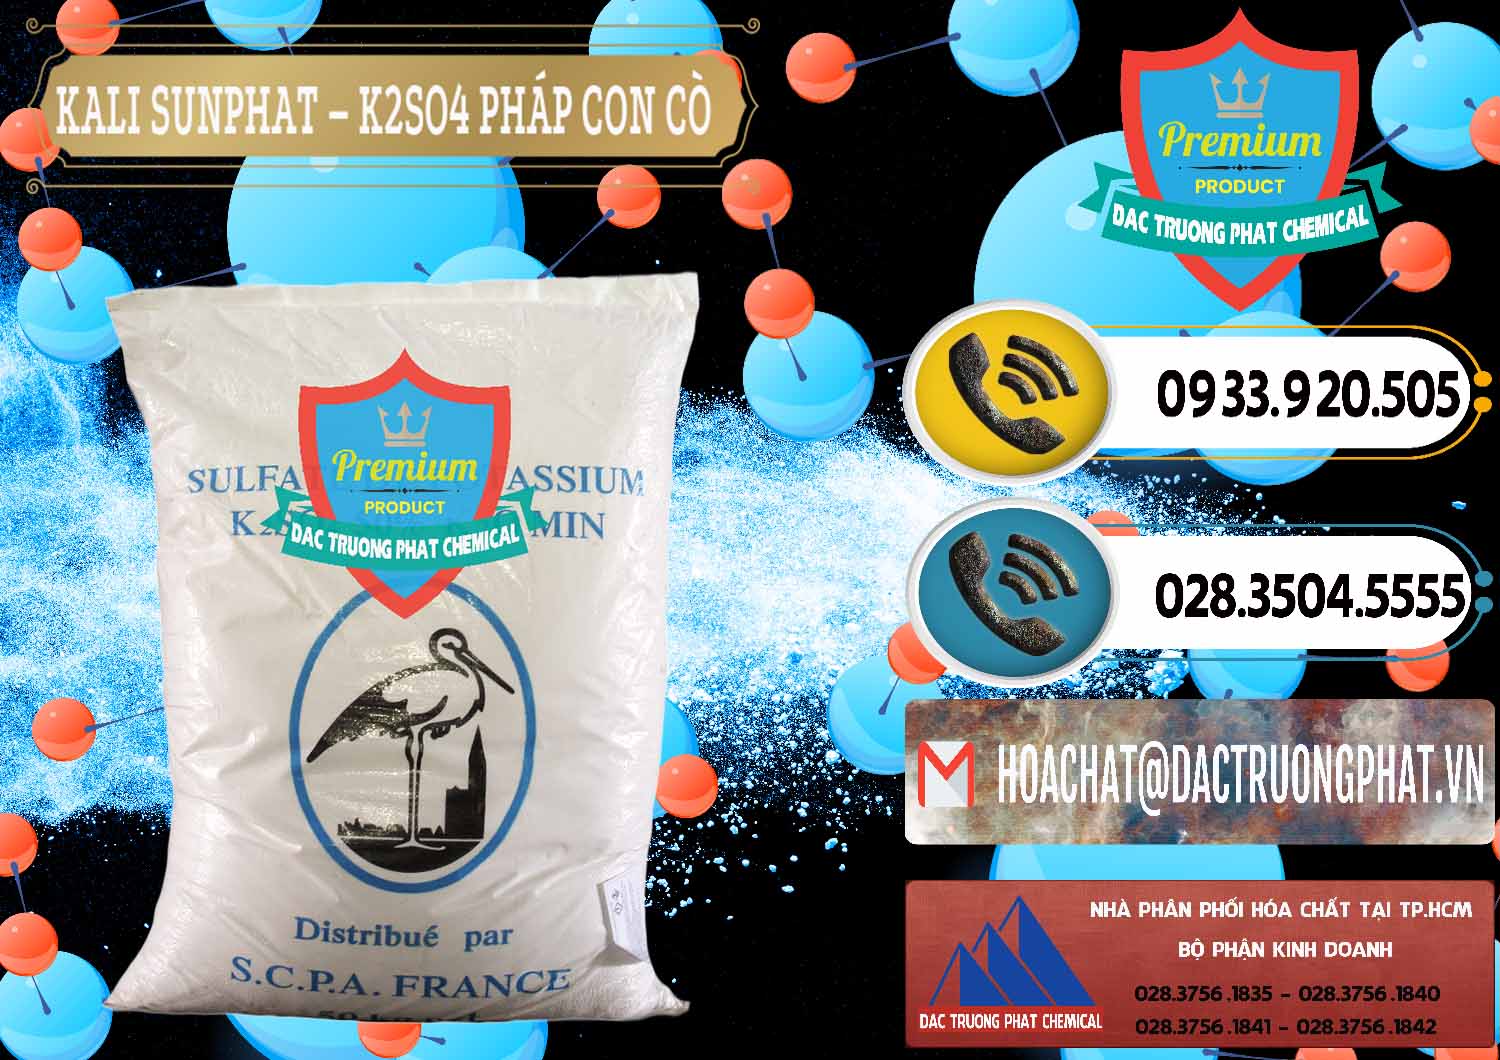 Công ty chuyên bán - cung ứng Kali Sunphat – K2SO4 Con Cò Pháp France - 0083 - Cty phân phối & nhập khẩu hóa chất tại TP.HCM - hoachatdetnhuom.vn